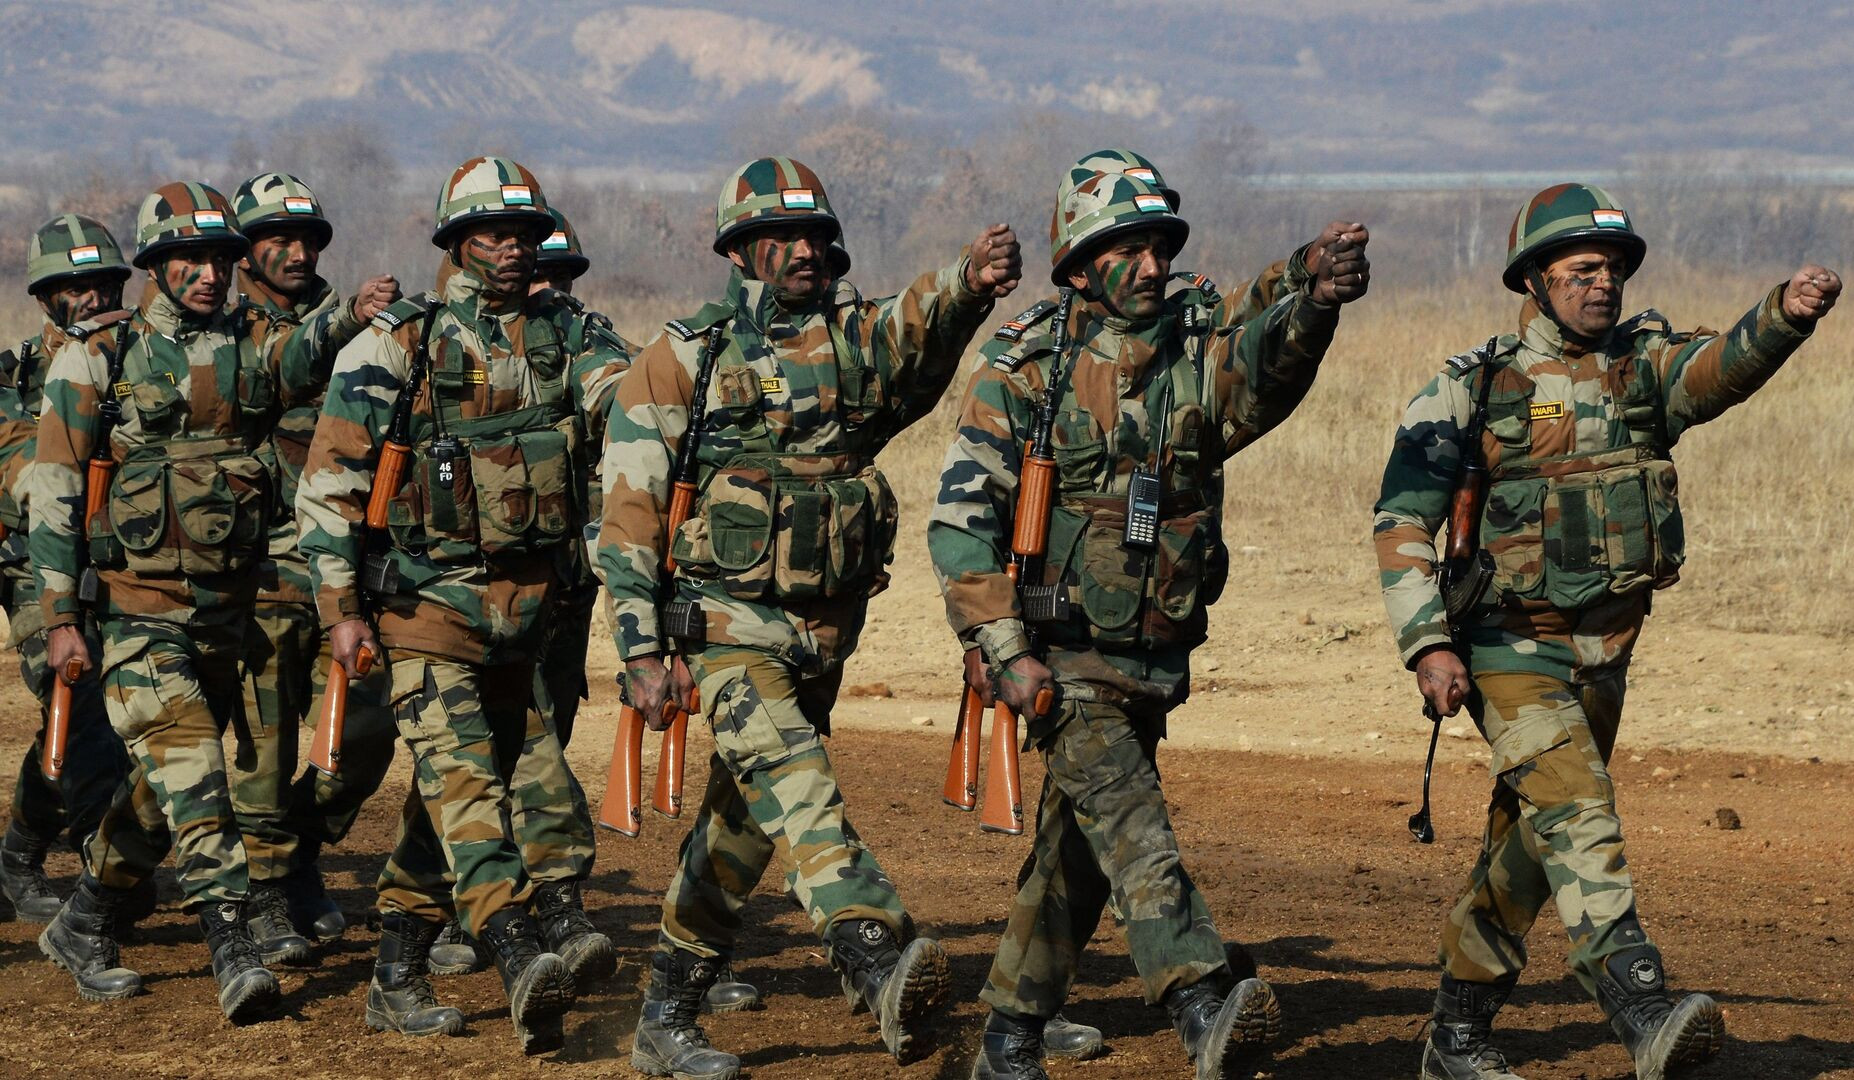 Հնդկաստանը լայնածավալ զորավարժություններ կանցկացնի՝ հնդկական մշակման և արտադրության զենքի ցուցադրմամբ